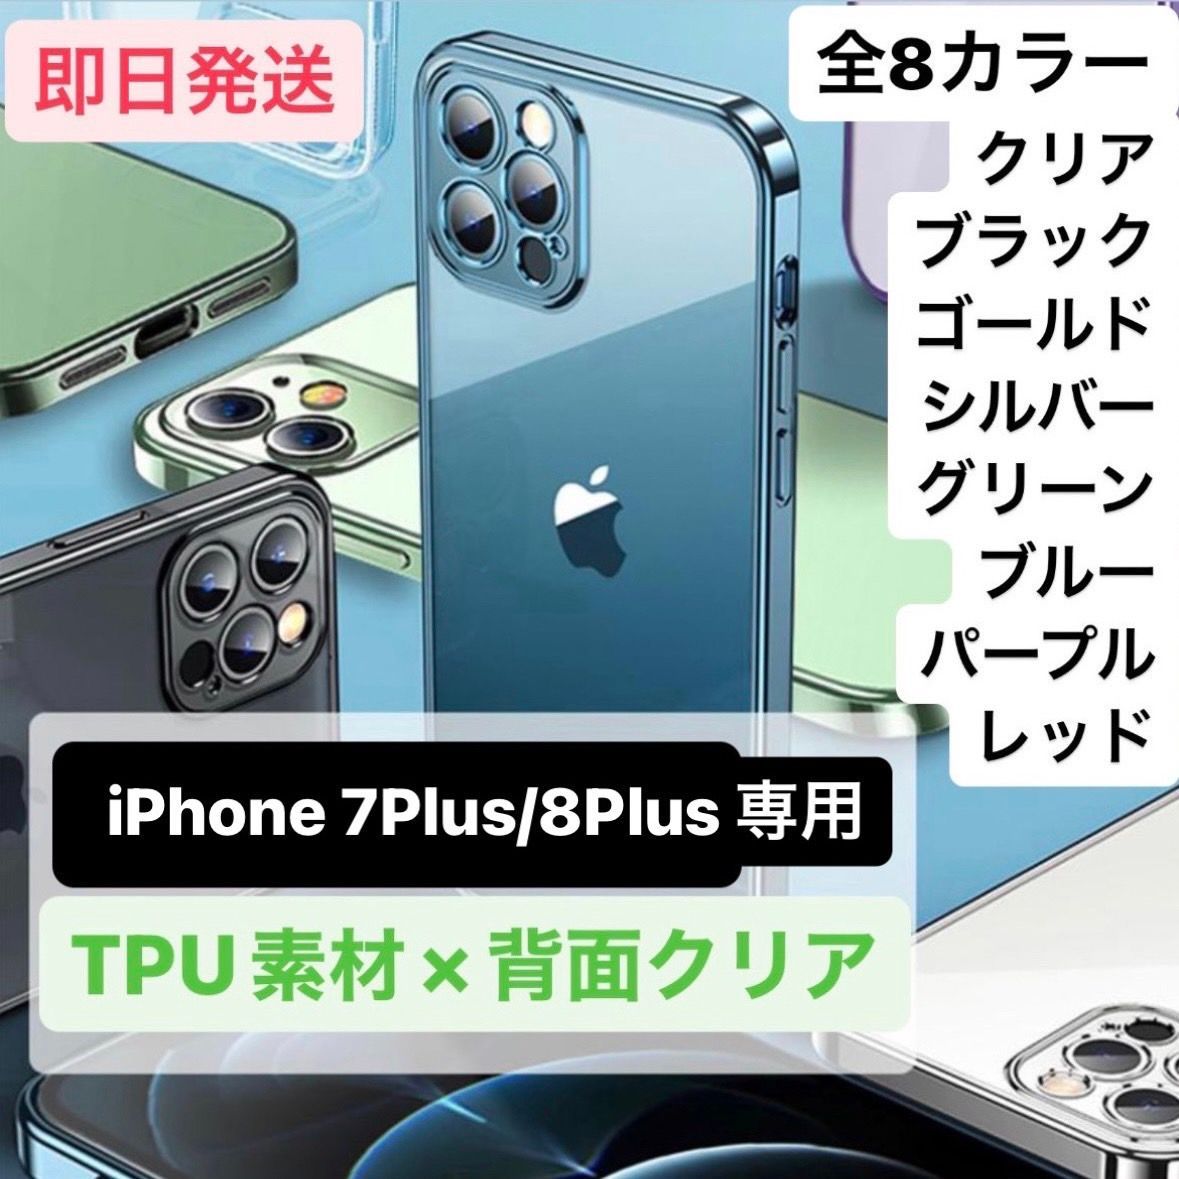 iPhoneケース 13 iPhone7plus アイフォン7plus 7plus iPhone8plus